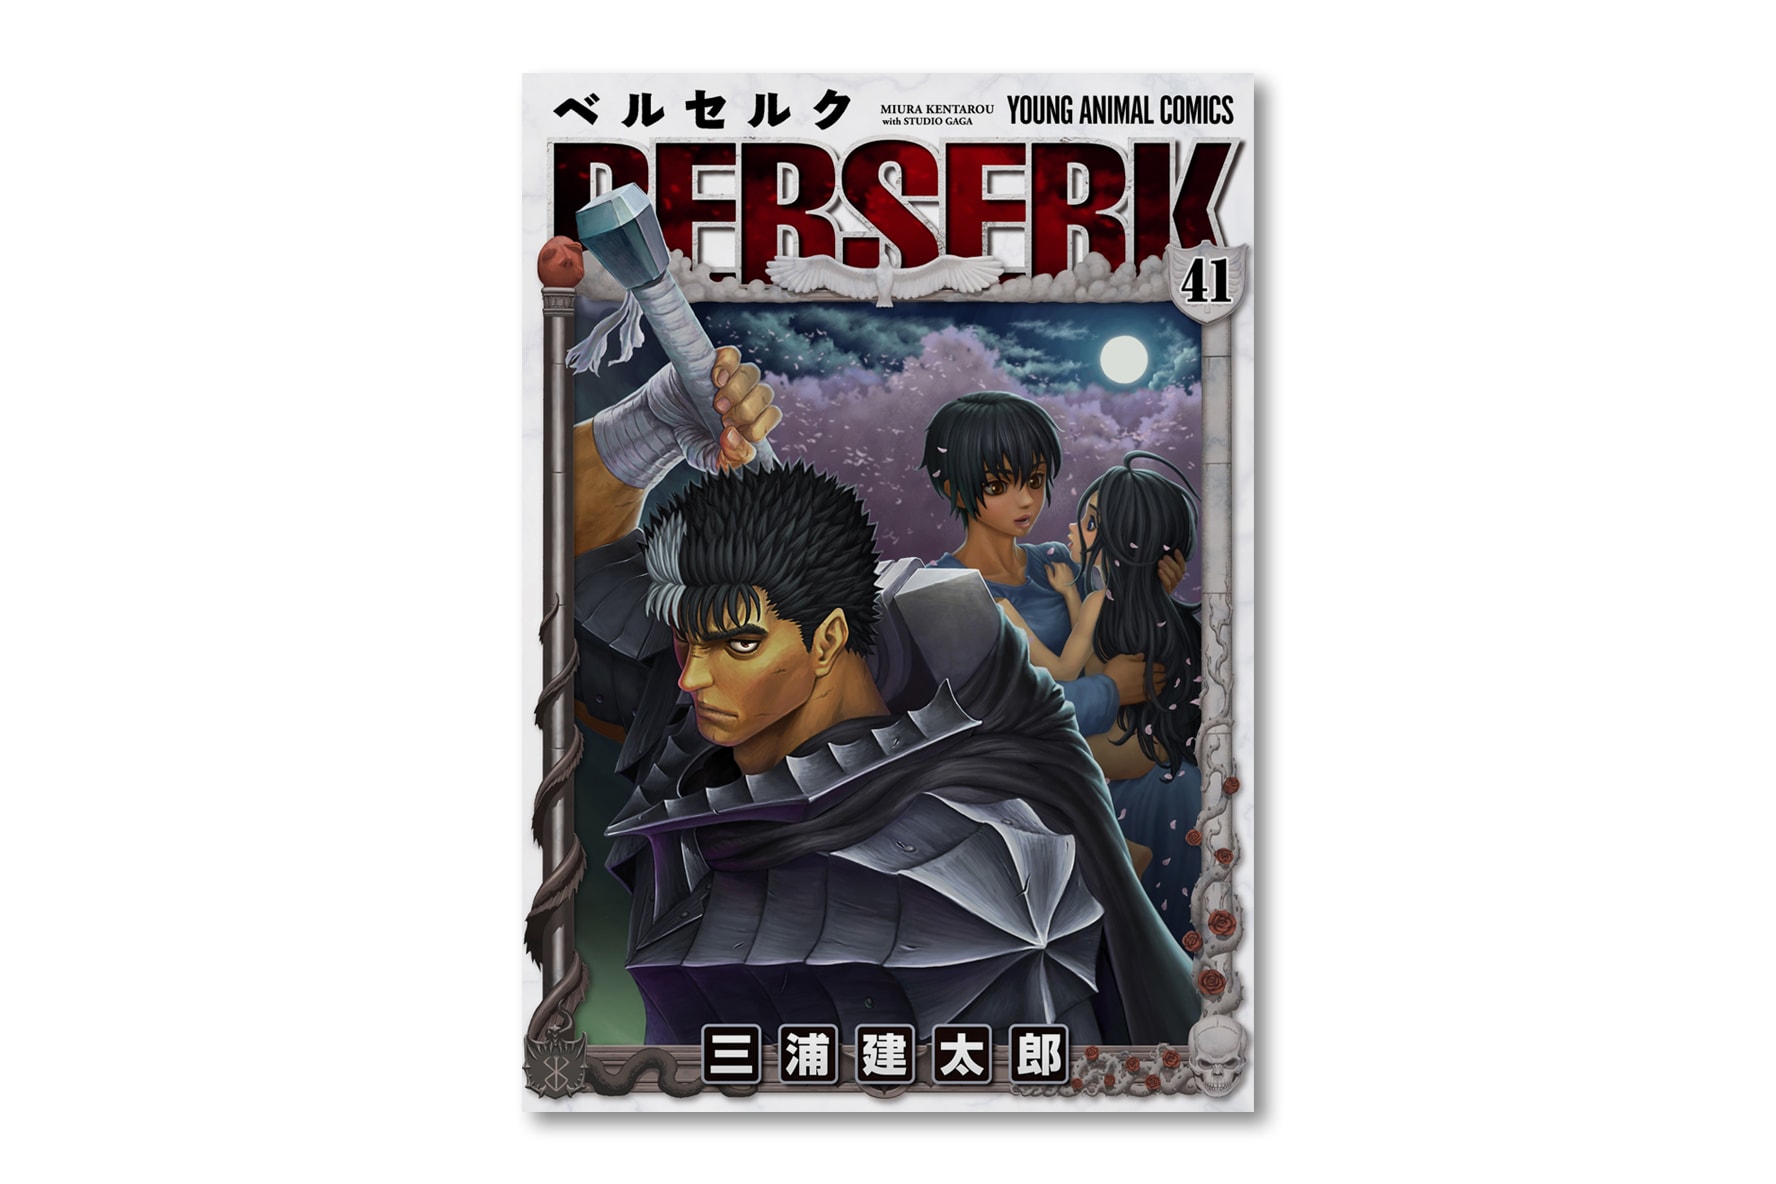 日本經典漫畫《烙印勇士 Berserk》全新單行本發售情報正式公佈